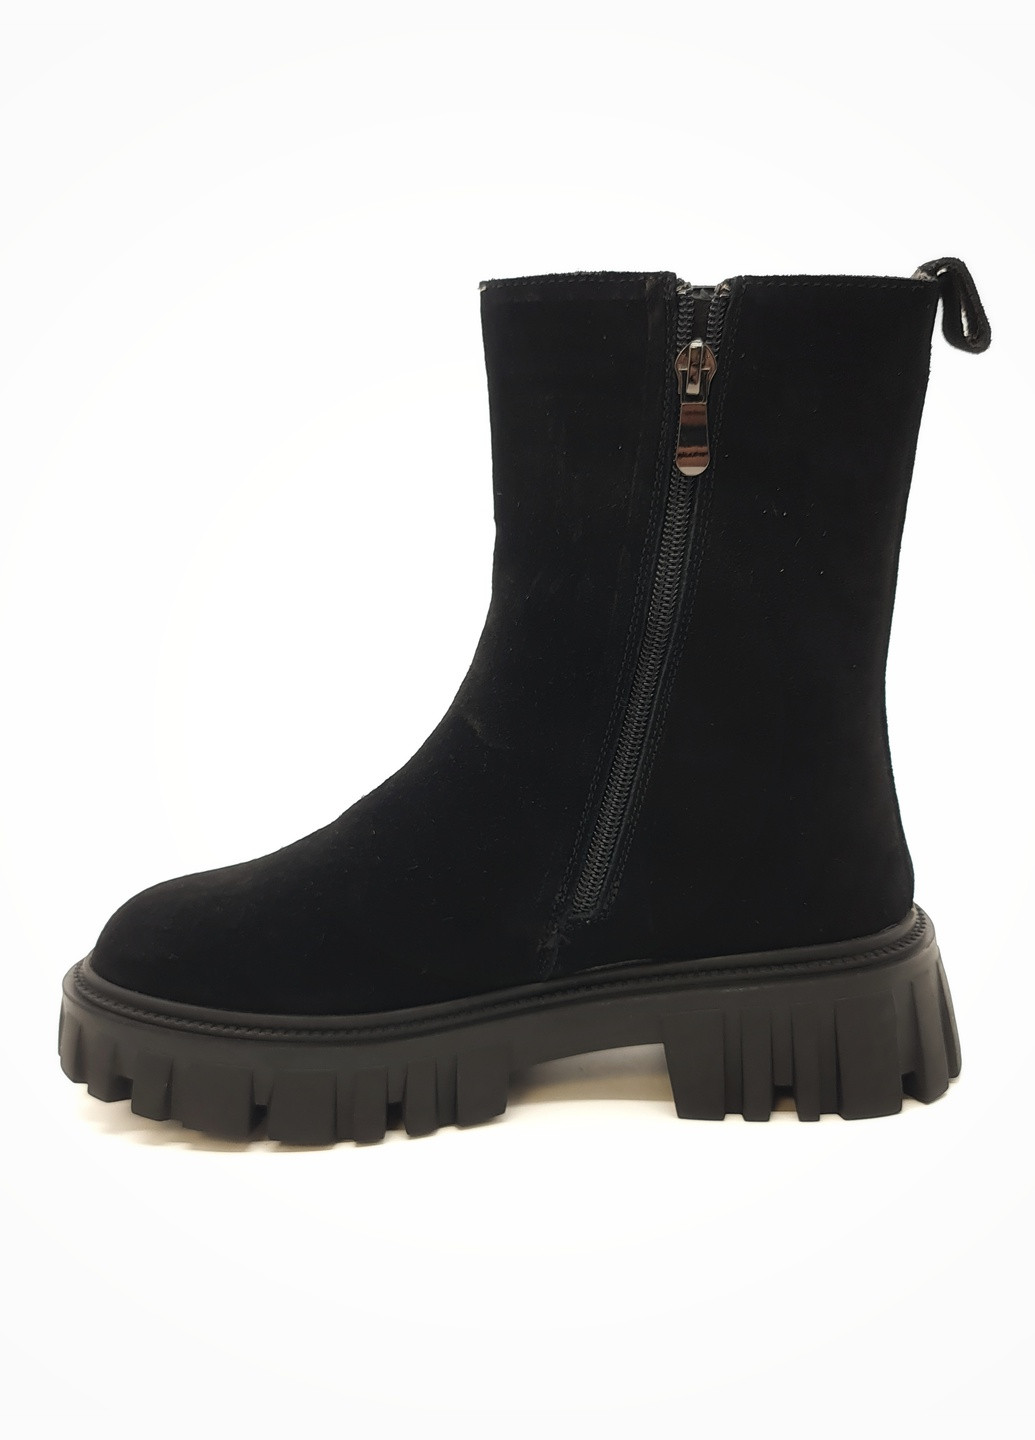 Жіночі черевики зимові чорні замшеві II-11-4 23 см (р) It is (259299434)